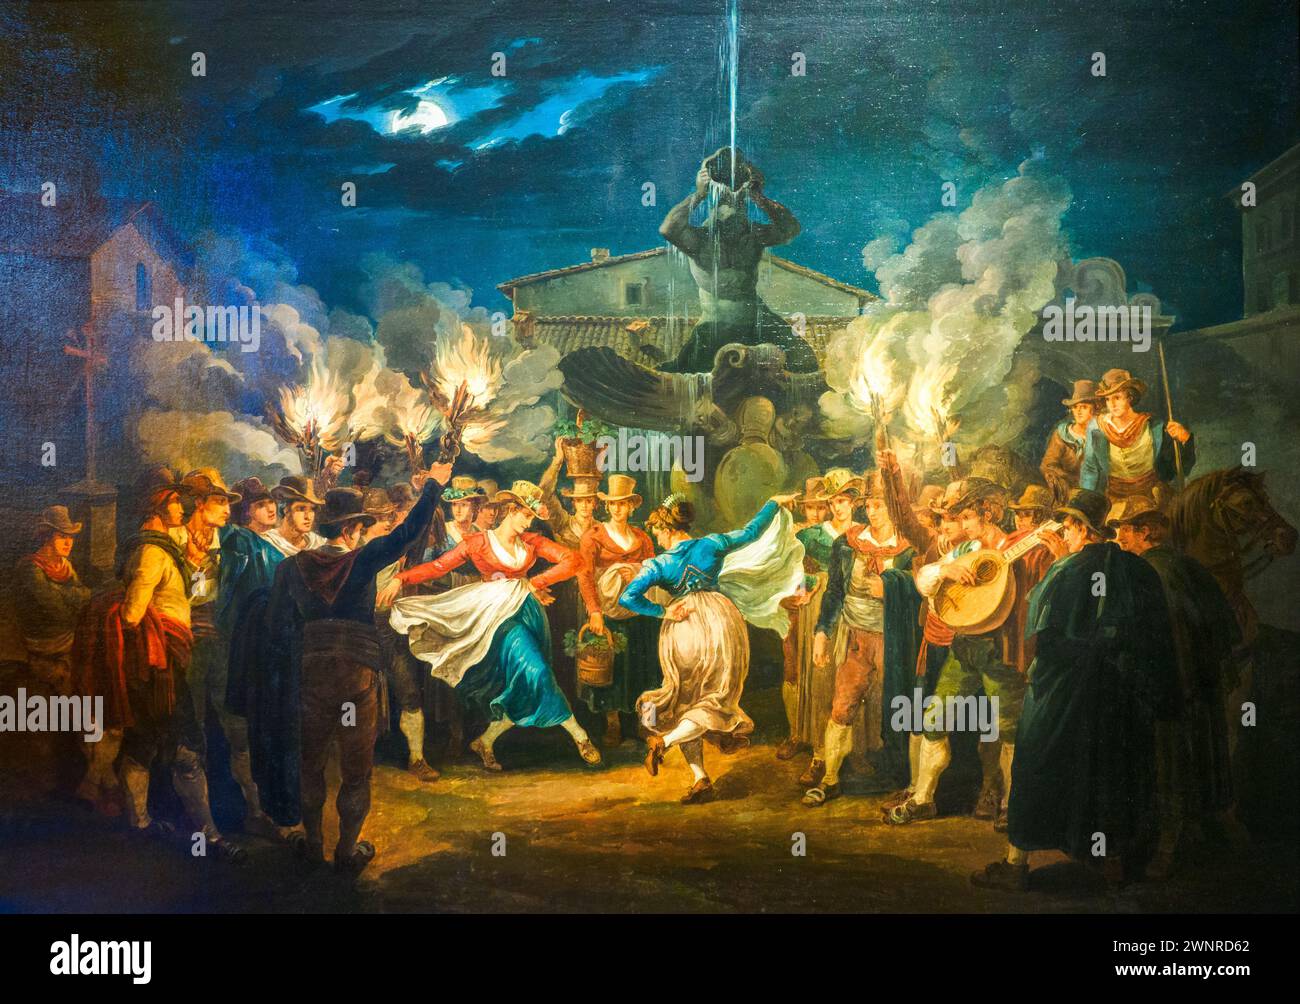 Il ballo "Saltarello" di notte del "mozzatore" in Piazza Barberini 1821 di Bartolomeo Pinelli (1781-1835) - olio su tela - Museo di Roma, Italia Foto Stock